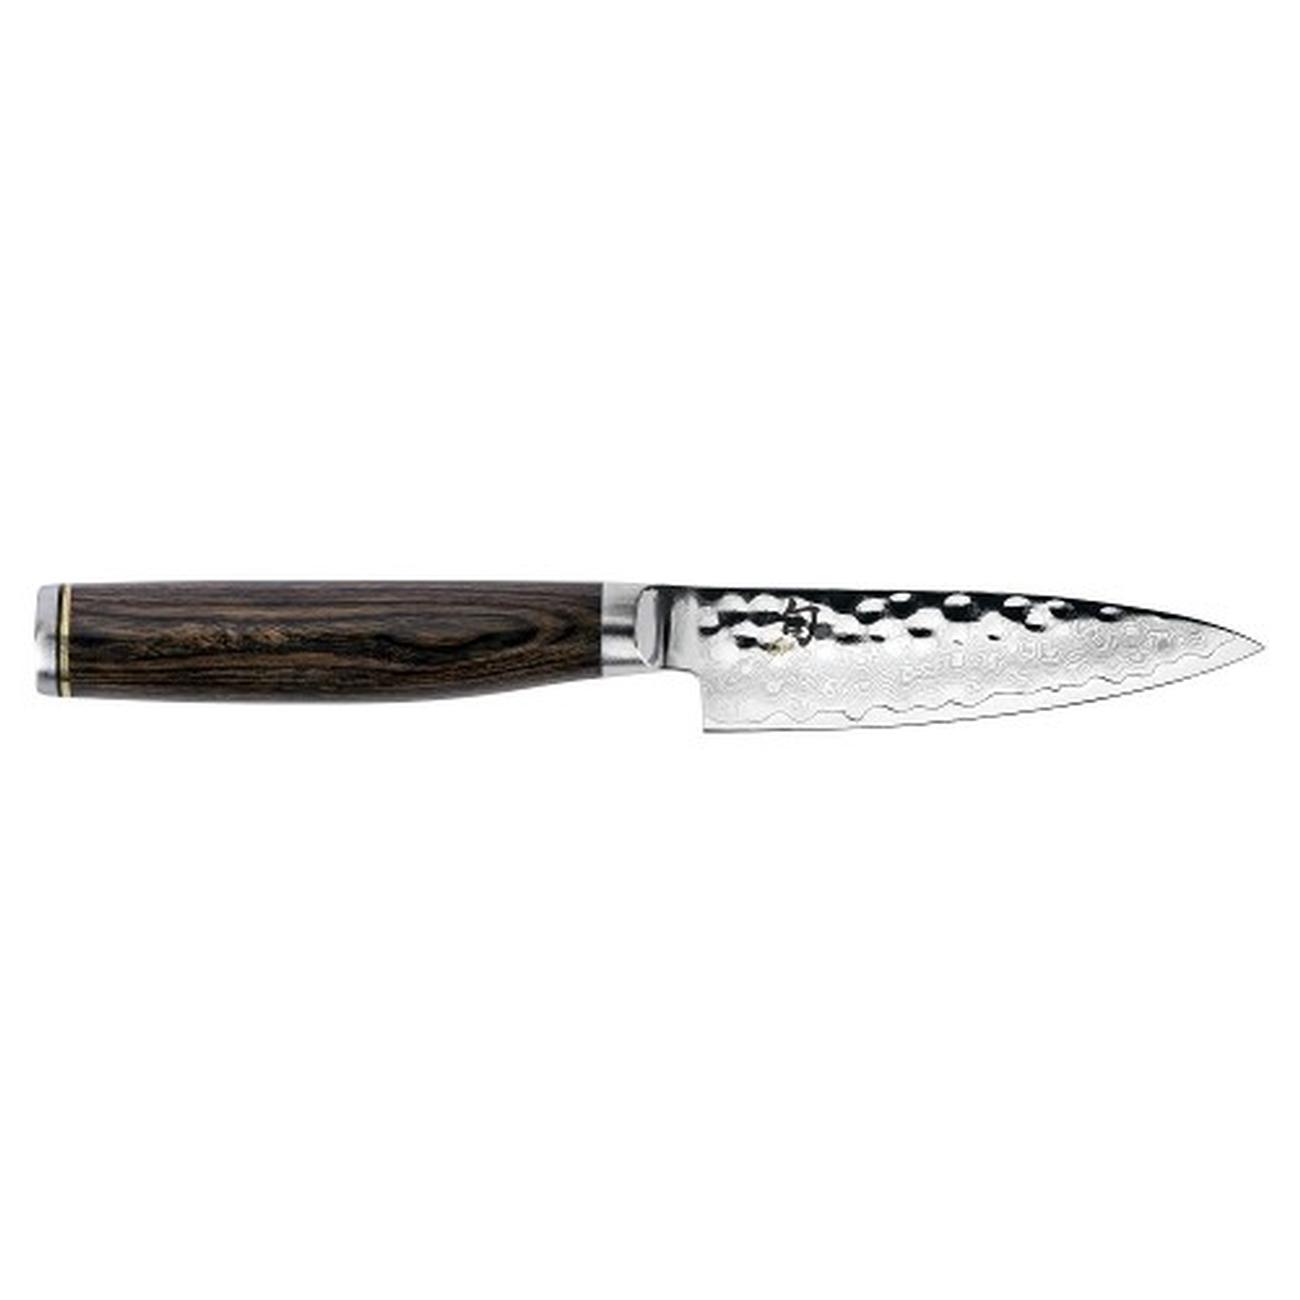 kai-shun-premier-paring-knife-4 - Kai Shun Premier Paring Knife 4 Inch 